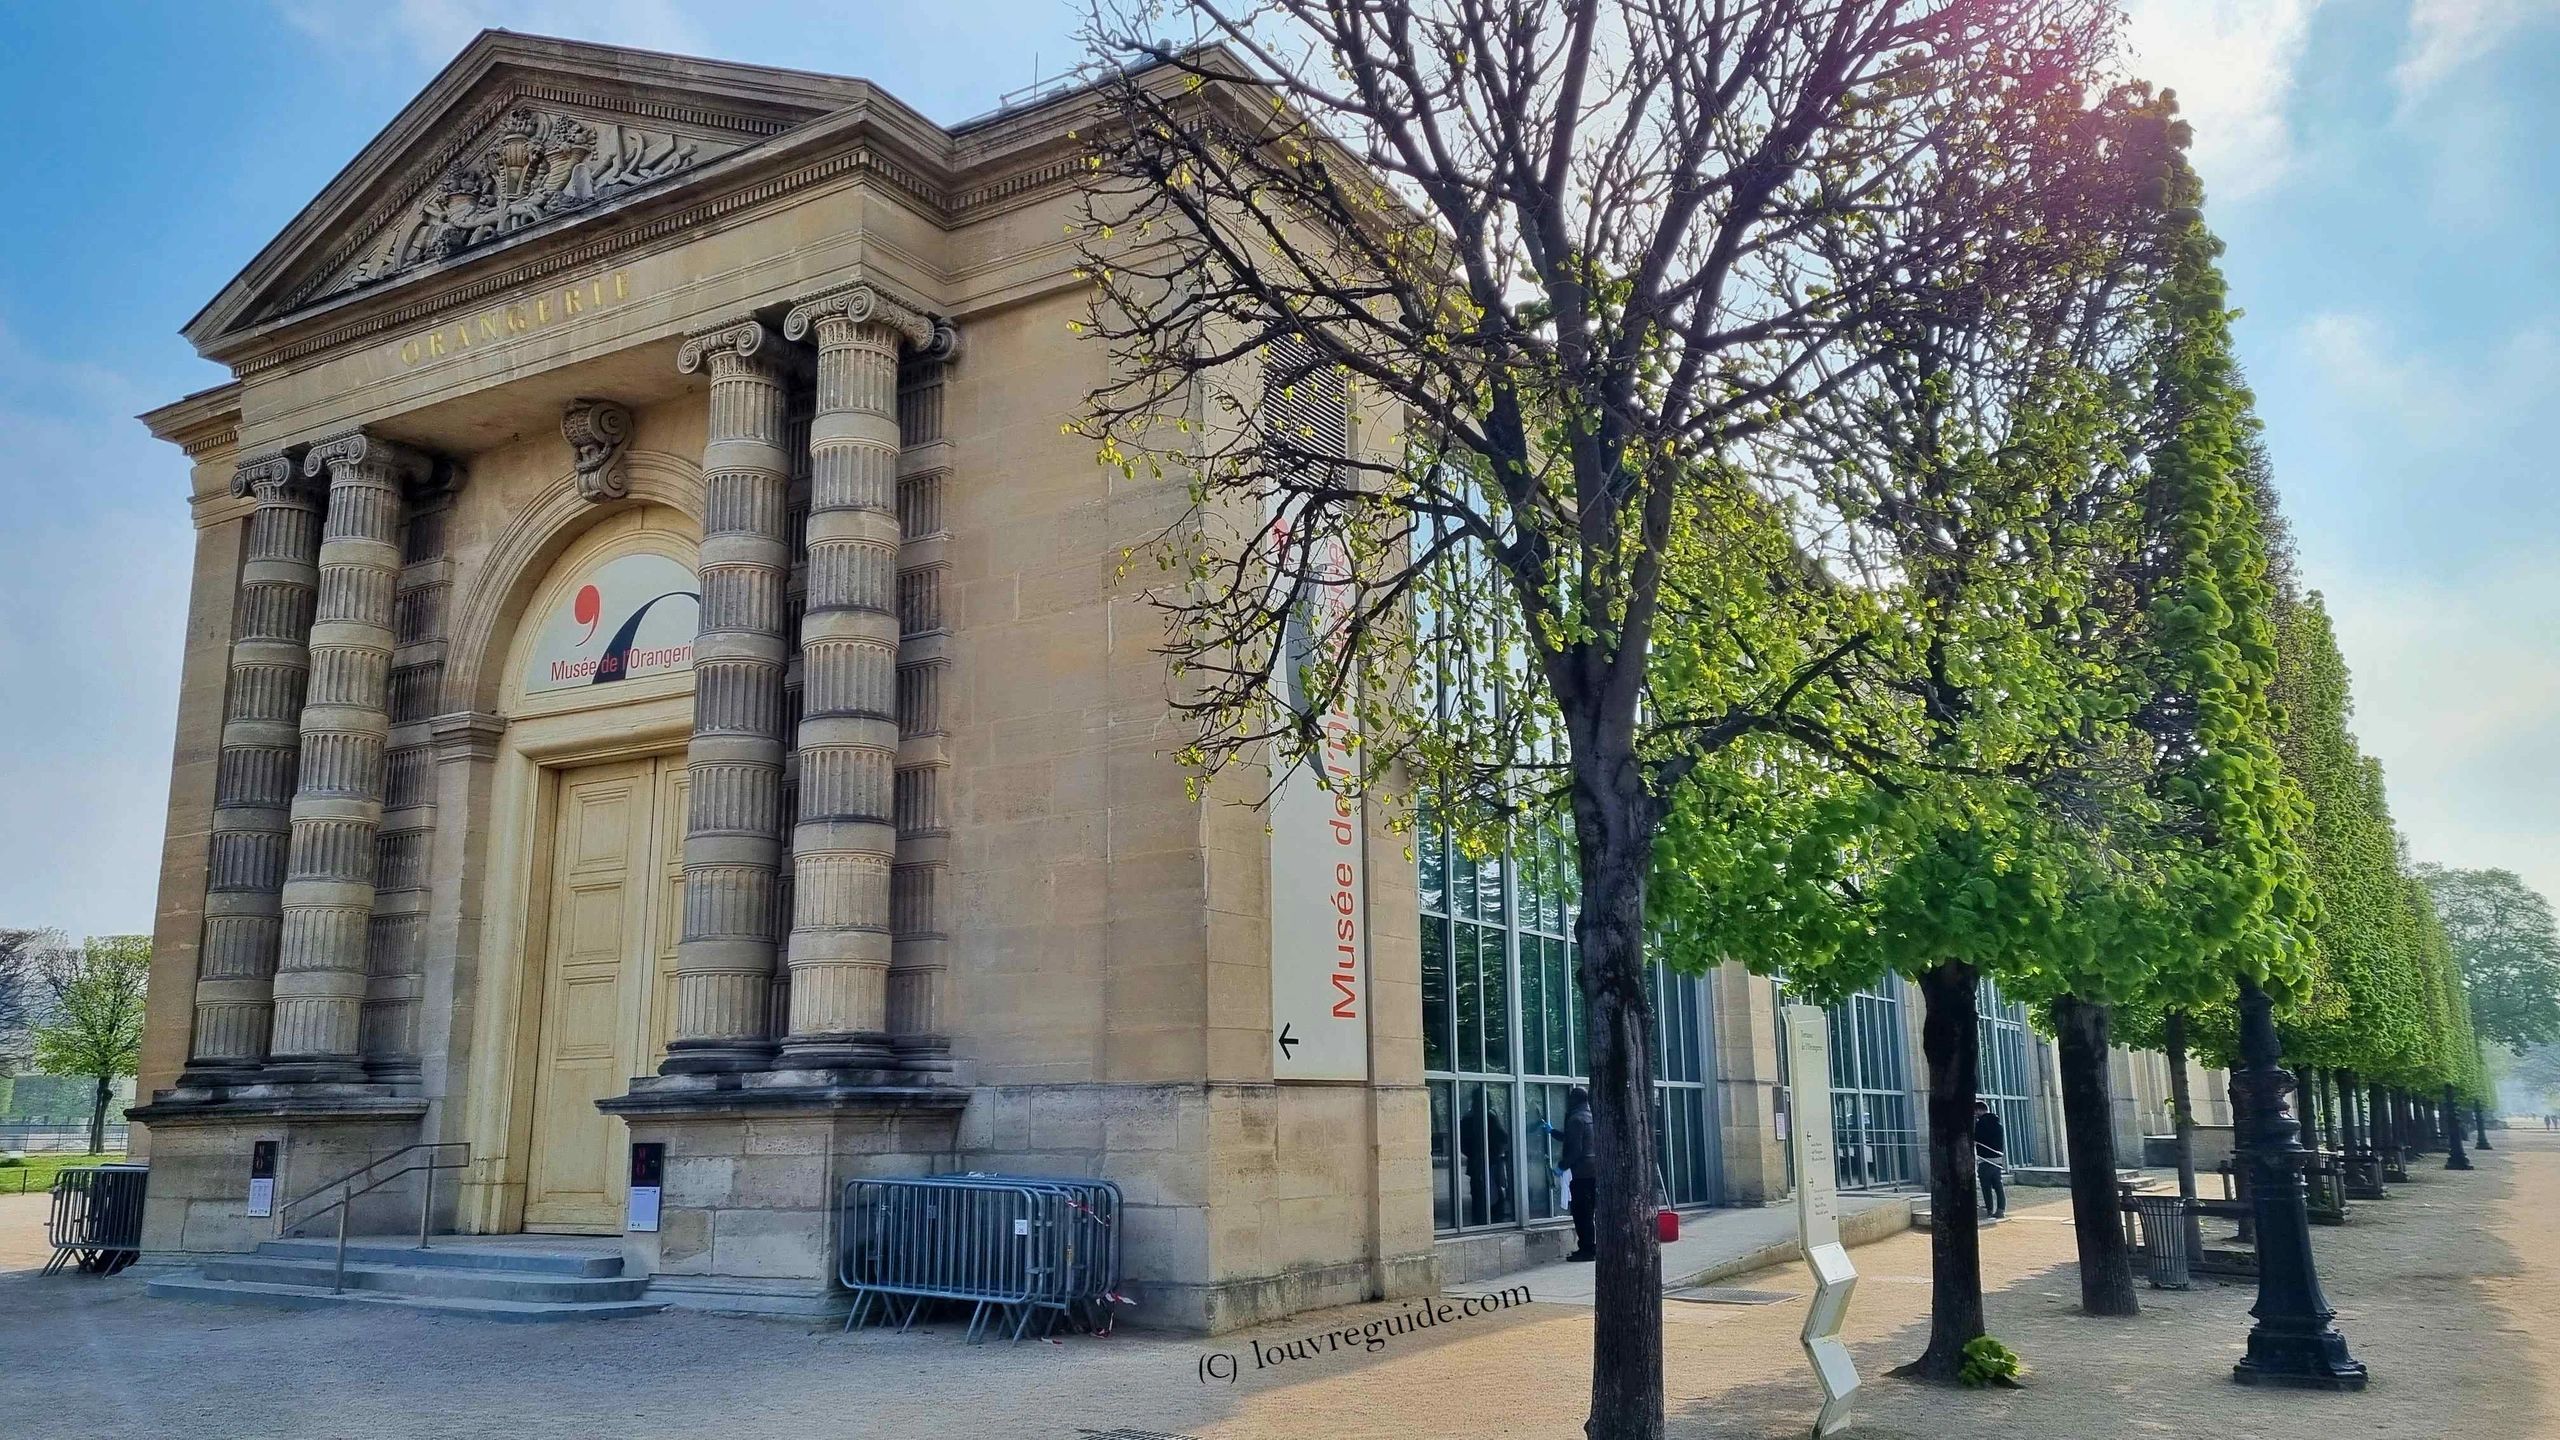 (copyright) Picture of the External view of Musée de L'ORANGERIE in Paris Tuilleries Louvreguide.com